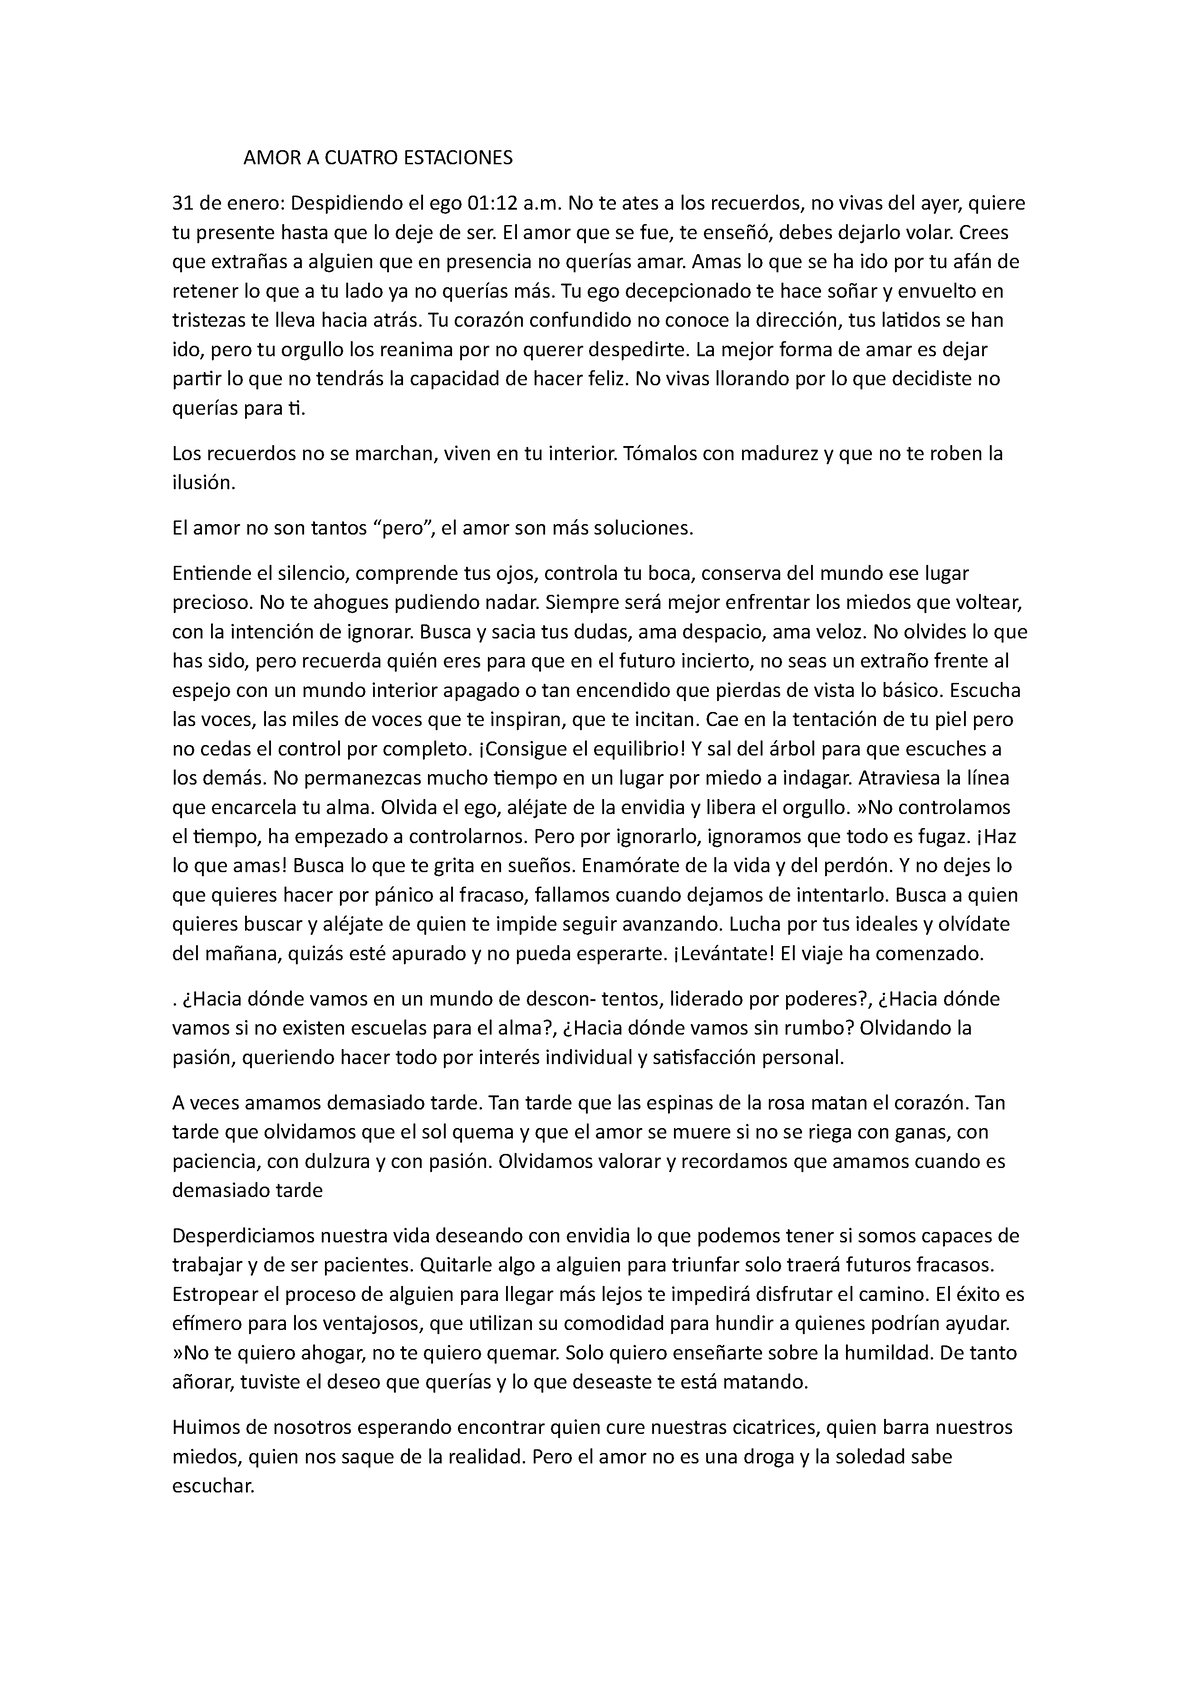 Amor a 4 estaciones frases Y otros documentos - AMOR A CUATRO ESTACIONES 31  de enero: Despidiendo el - Studocu